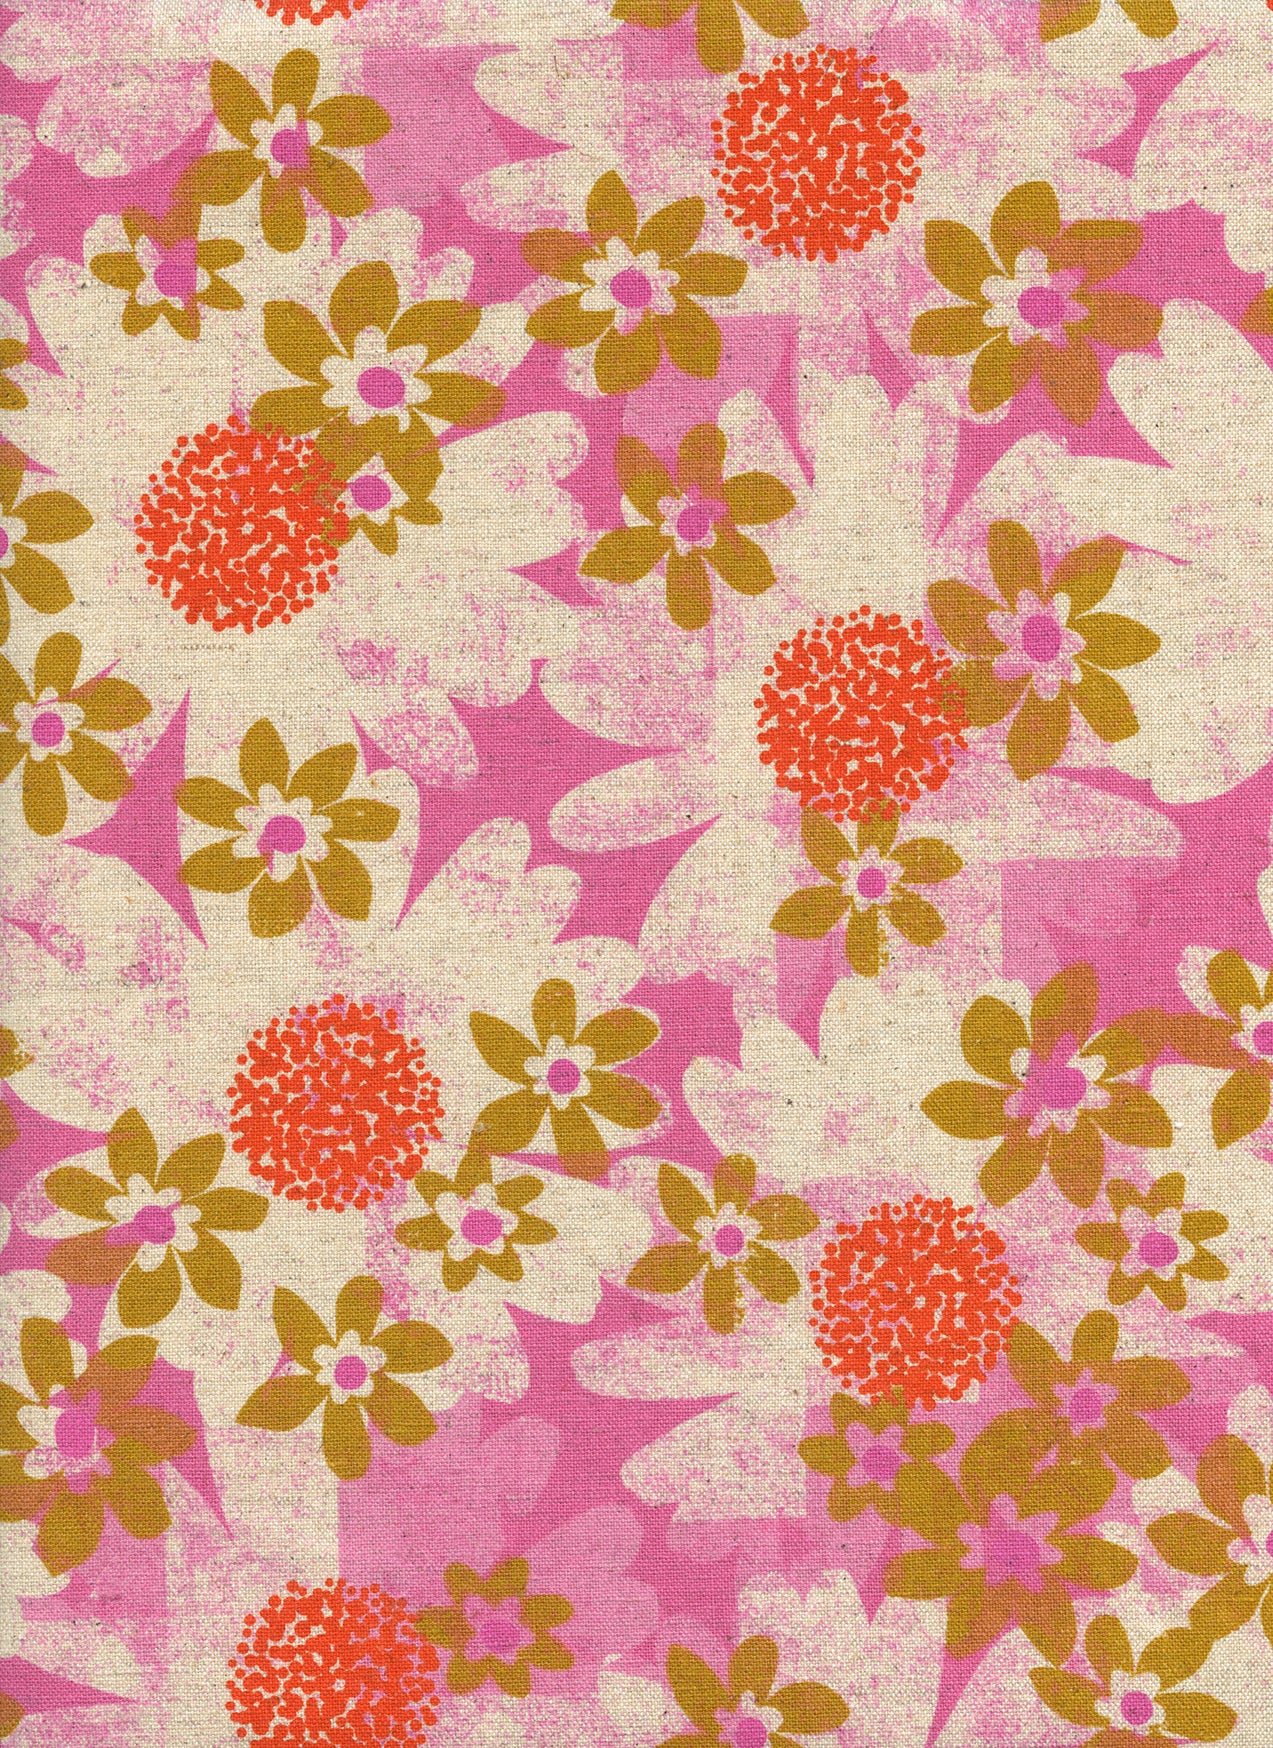 Trinket - Daisy Fields in Pink | Canvas